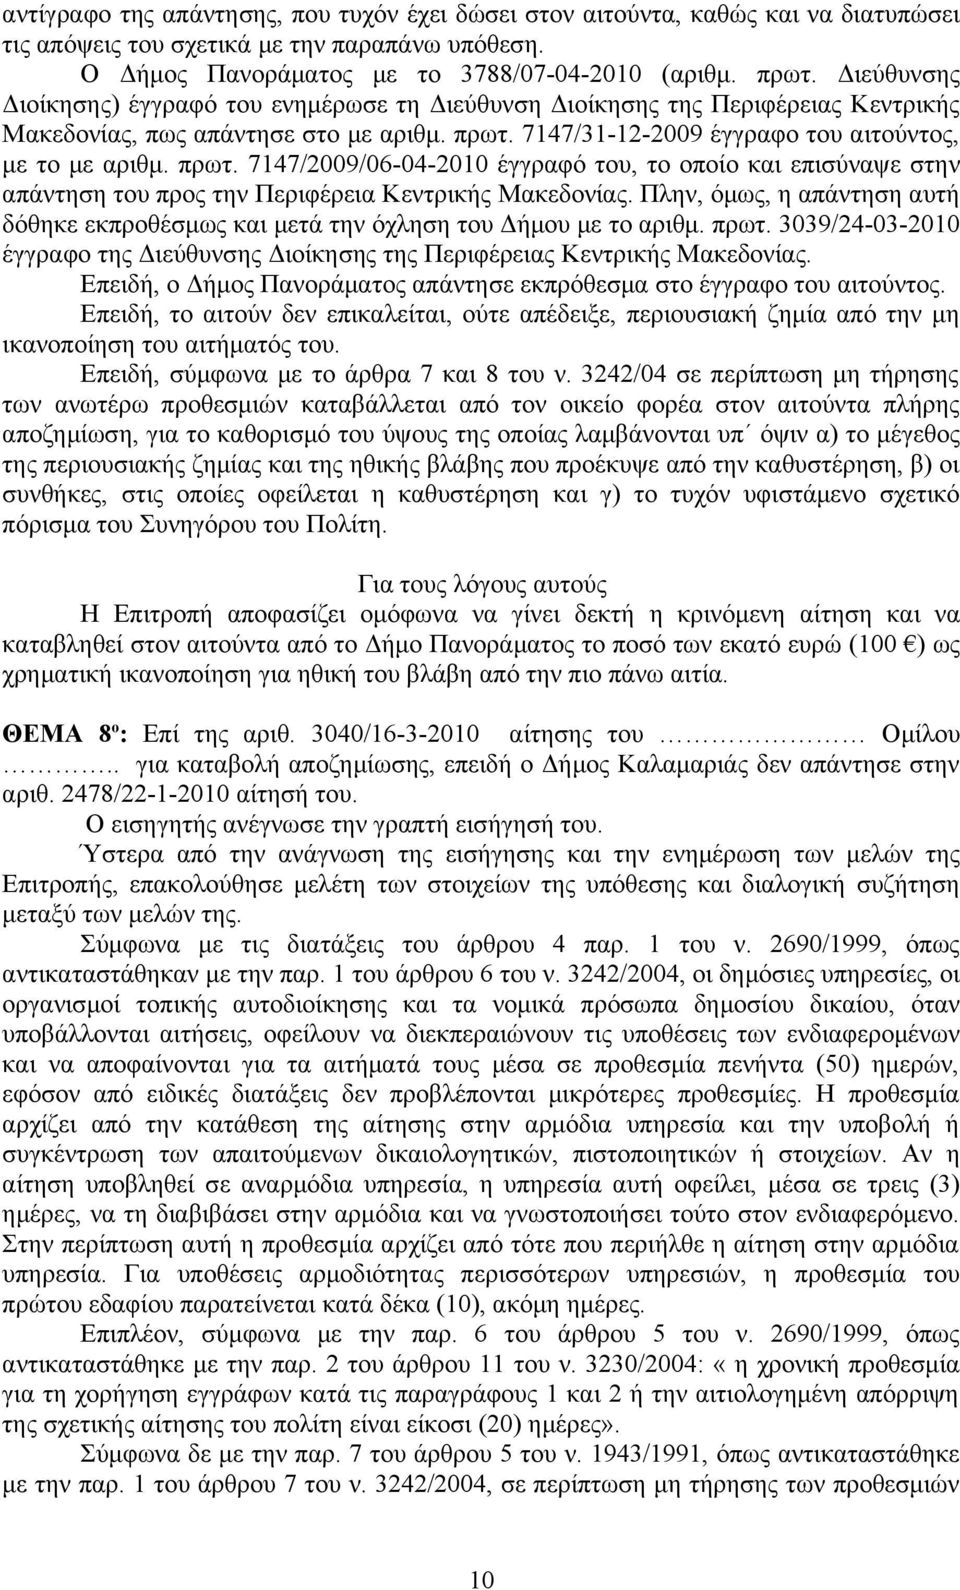 7147/31-12-2009 έγγραφο του αιτούντος, με το με αριθμ. πρωτ. 7147/2009/06-04-2010 έγγραφό του, το οποίο και επισύναψε στην απάντηση του προς την Περιφέρεια Κεντρικής Μακεδονίας.